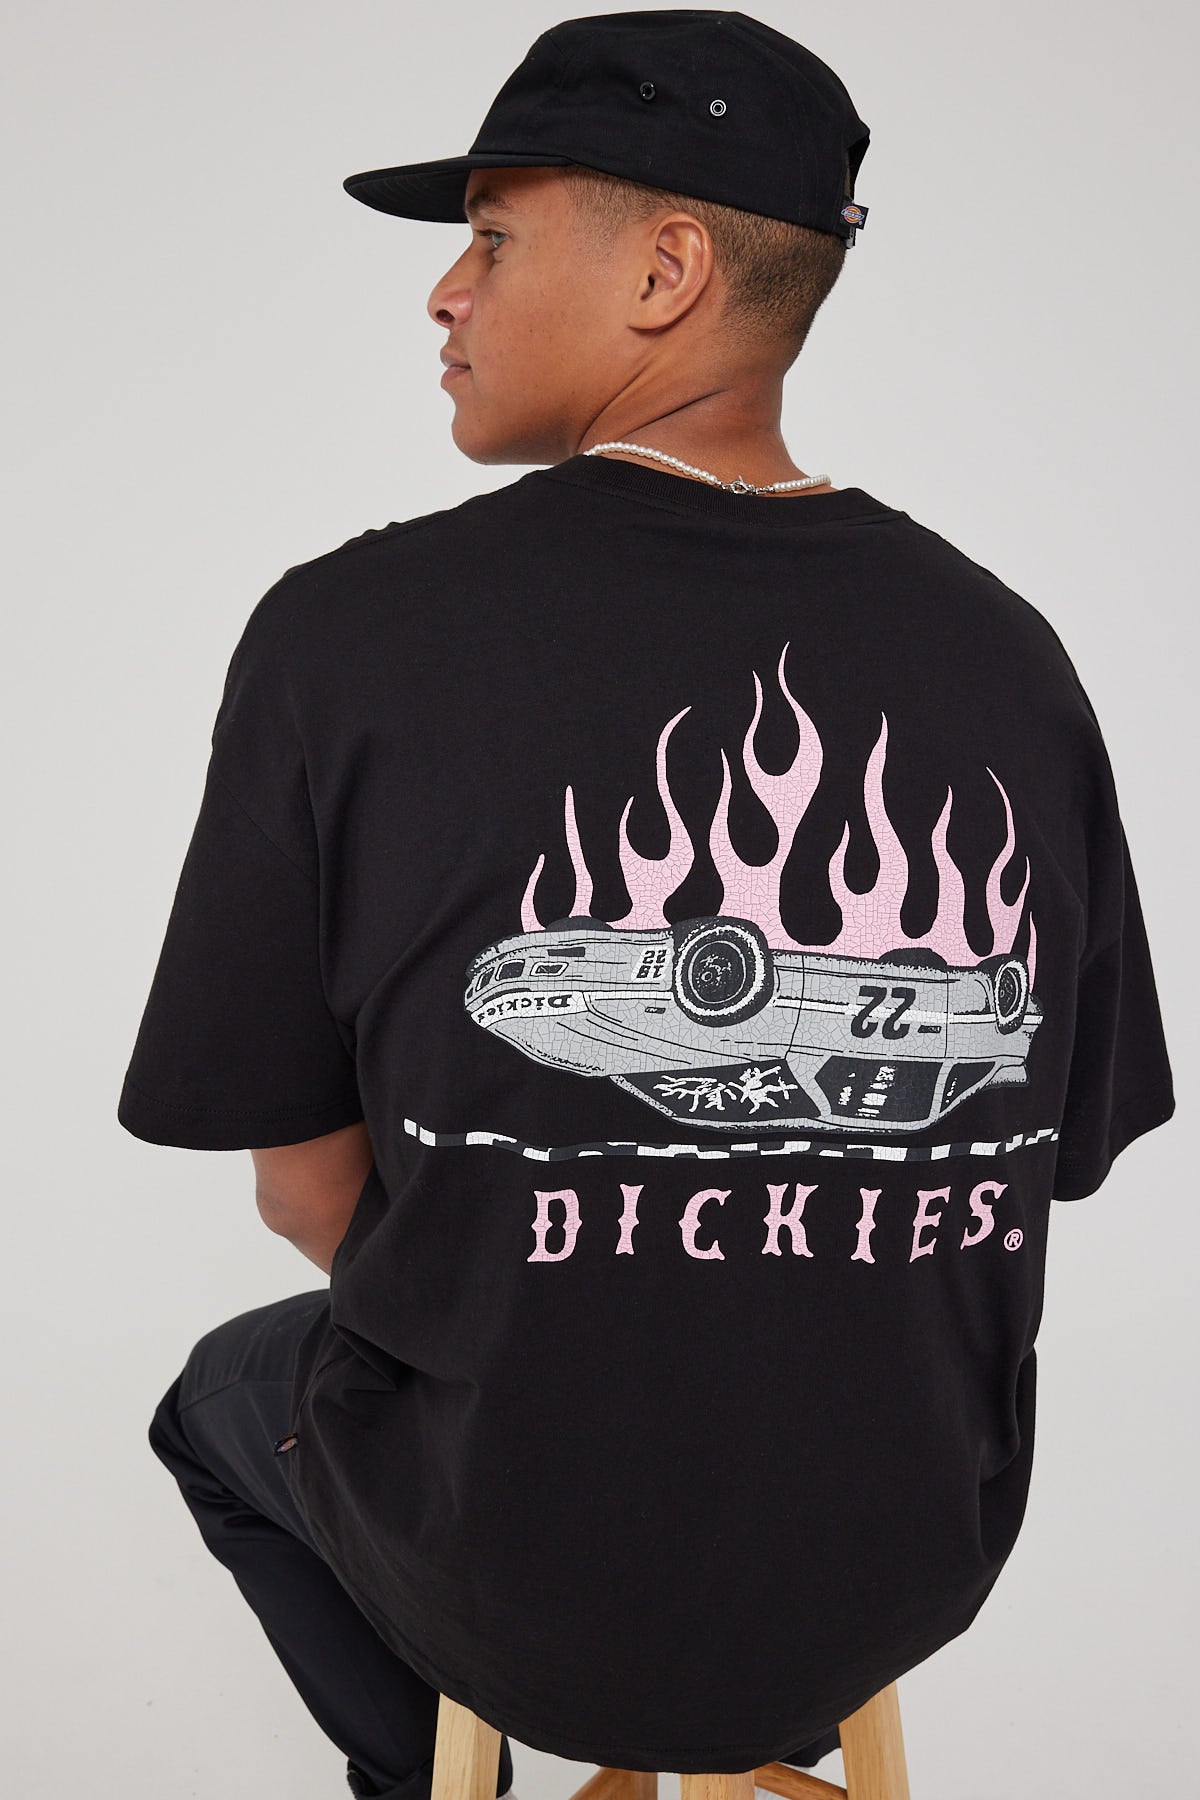 Dickies No Return 330 Fit Tee Black